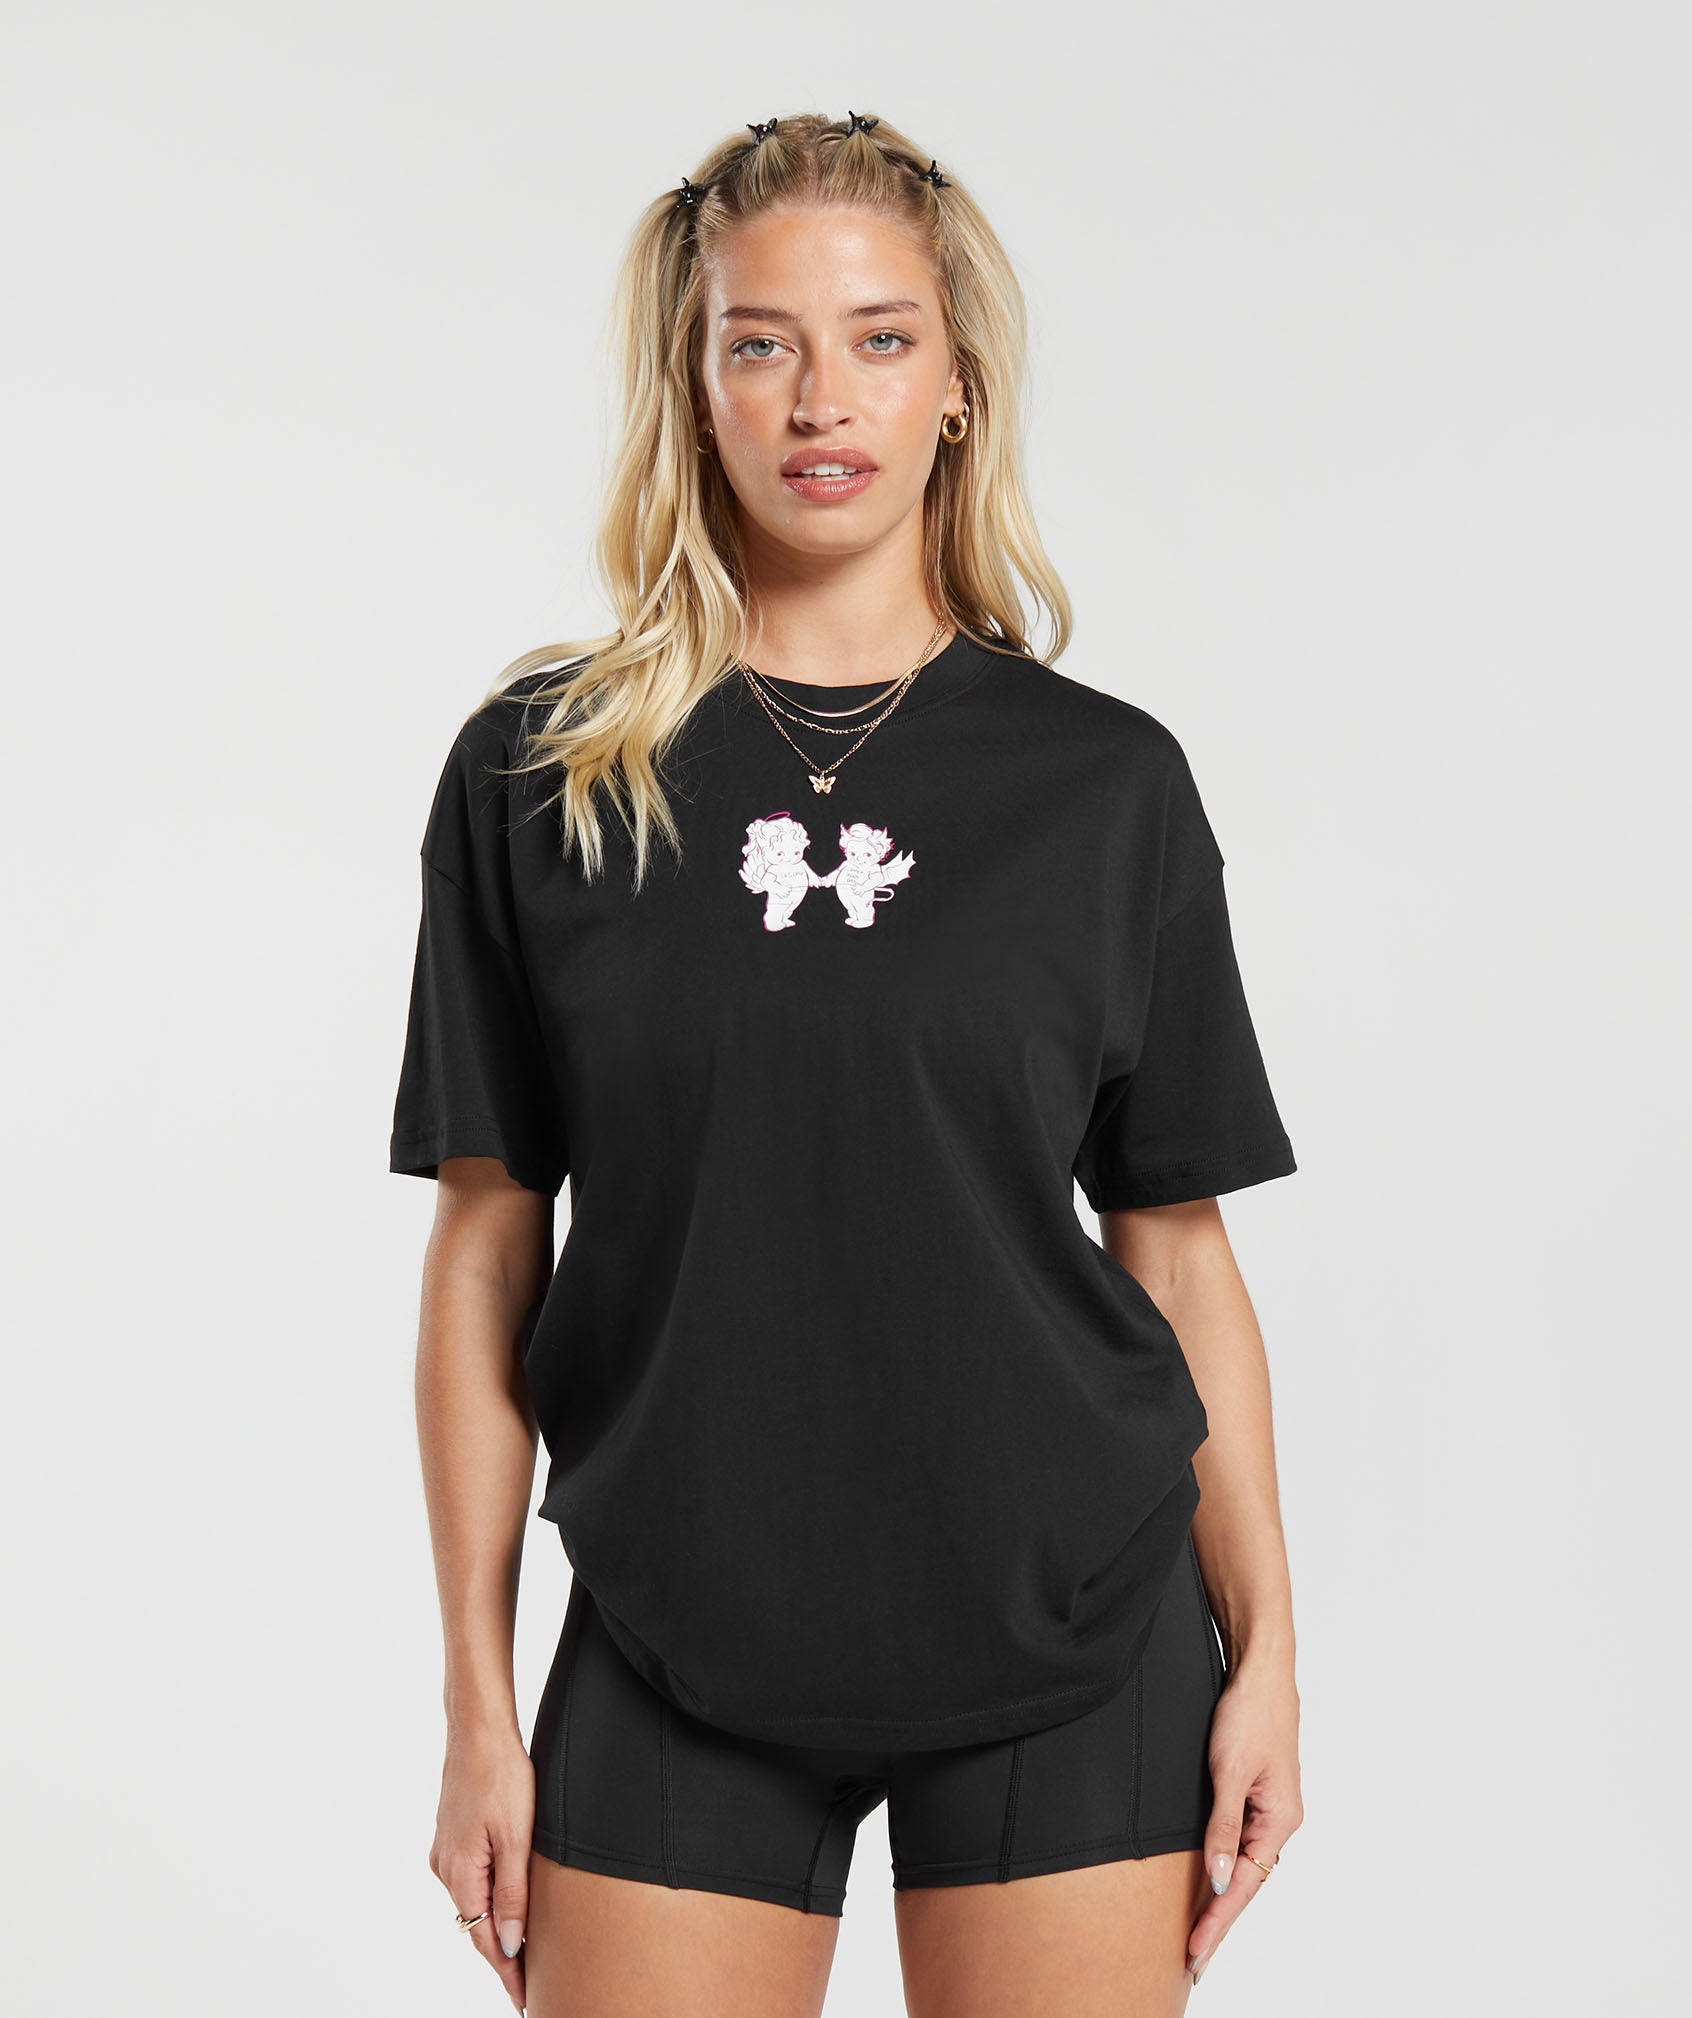 Gymshark Cherub Graphic T-Shirt - Black